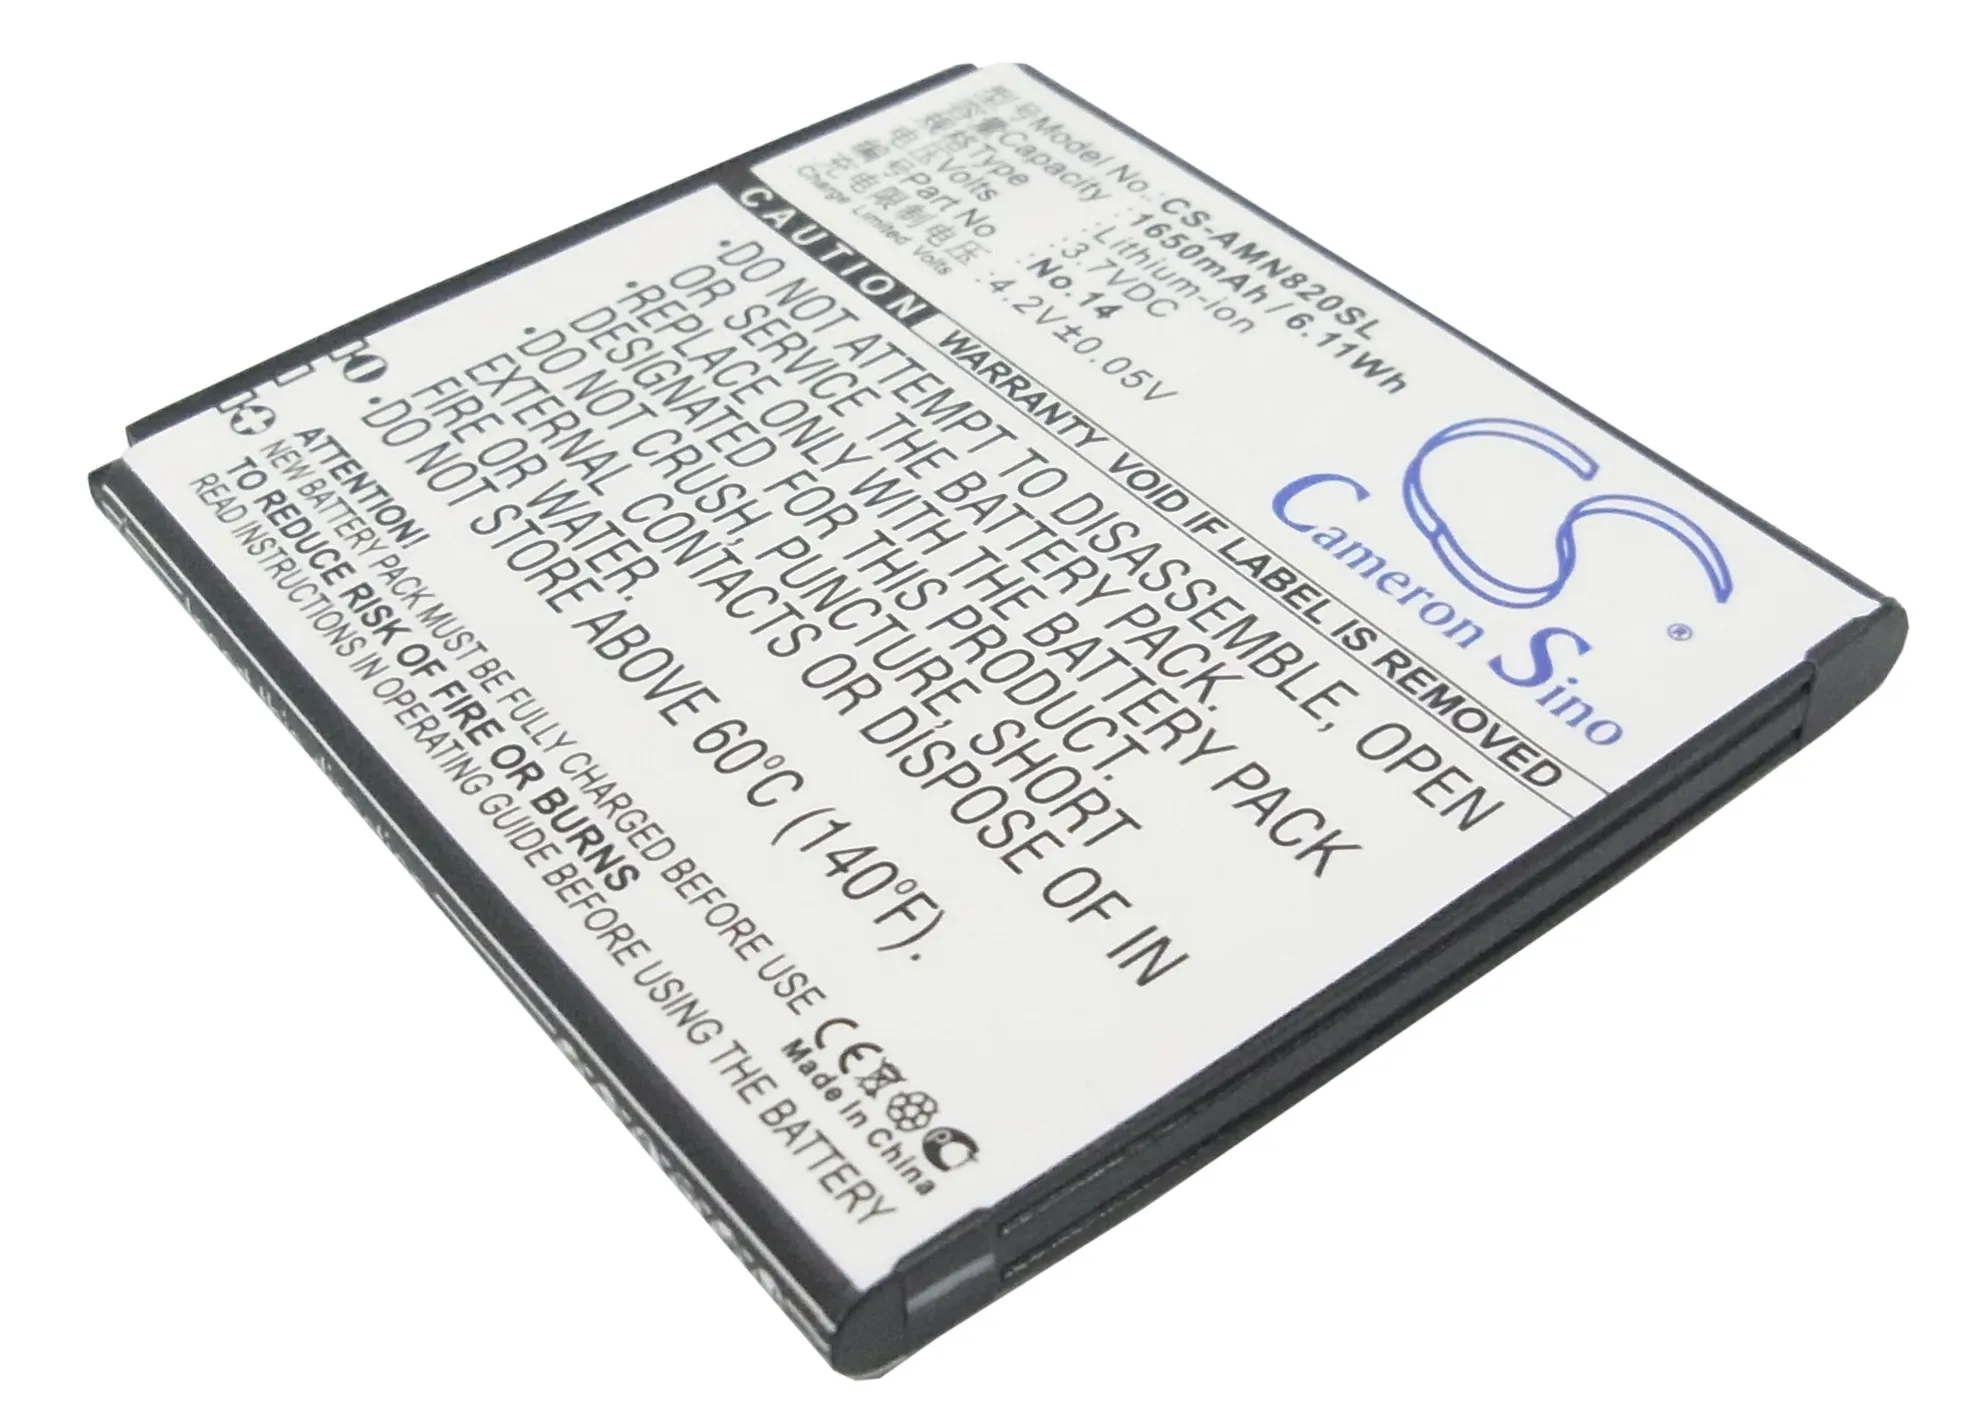 

CS 1650mAh / 6.11Wh battery for AMOI N818, N820, N821, N828, N828T, N850 No.14